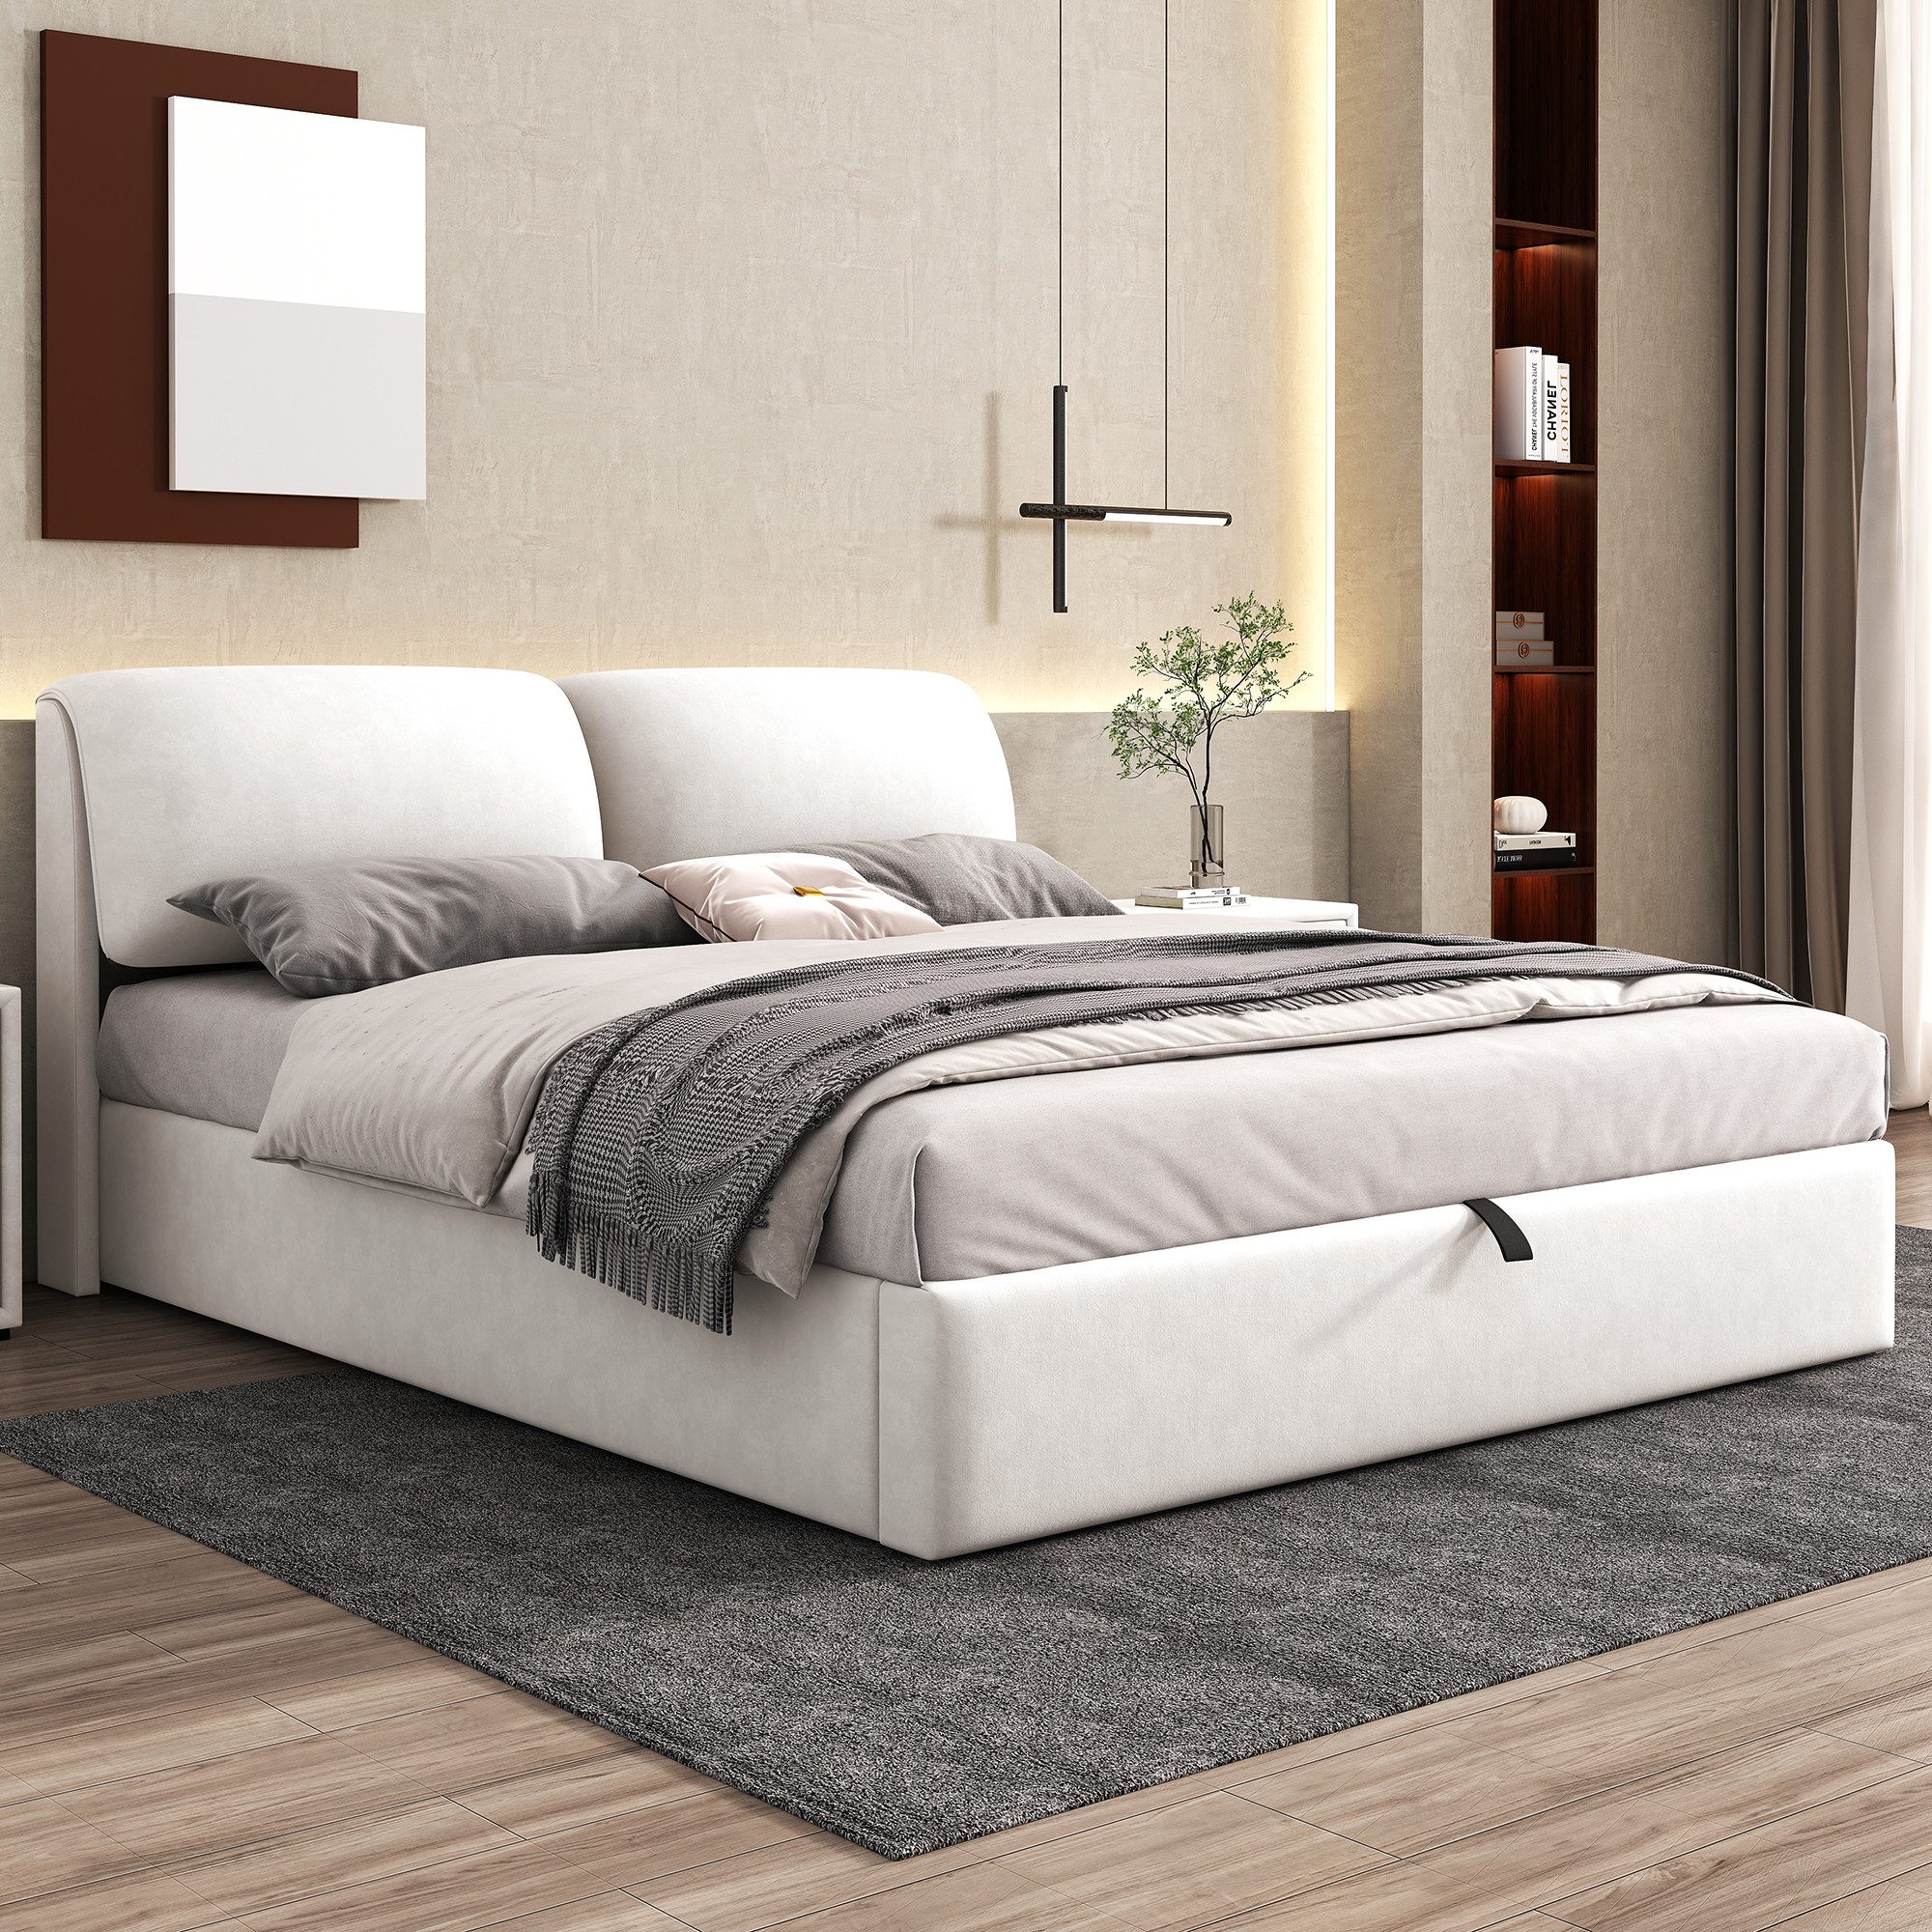 WISHDOR Polsterbett Hydraulisches Bett (180*200cm), mit 3 Schubladen,Bettkasten zur Aufbewahrung, Lattenrost mit Kopfteil